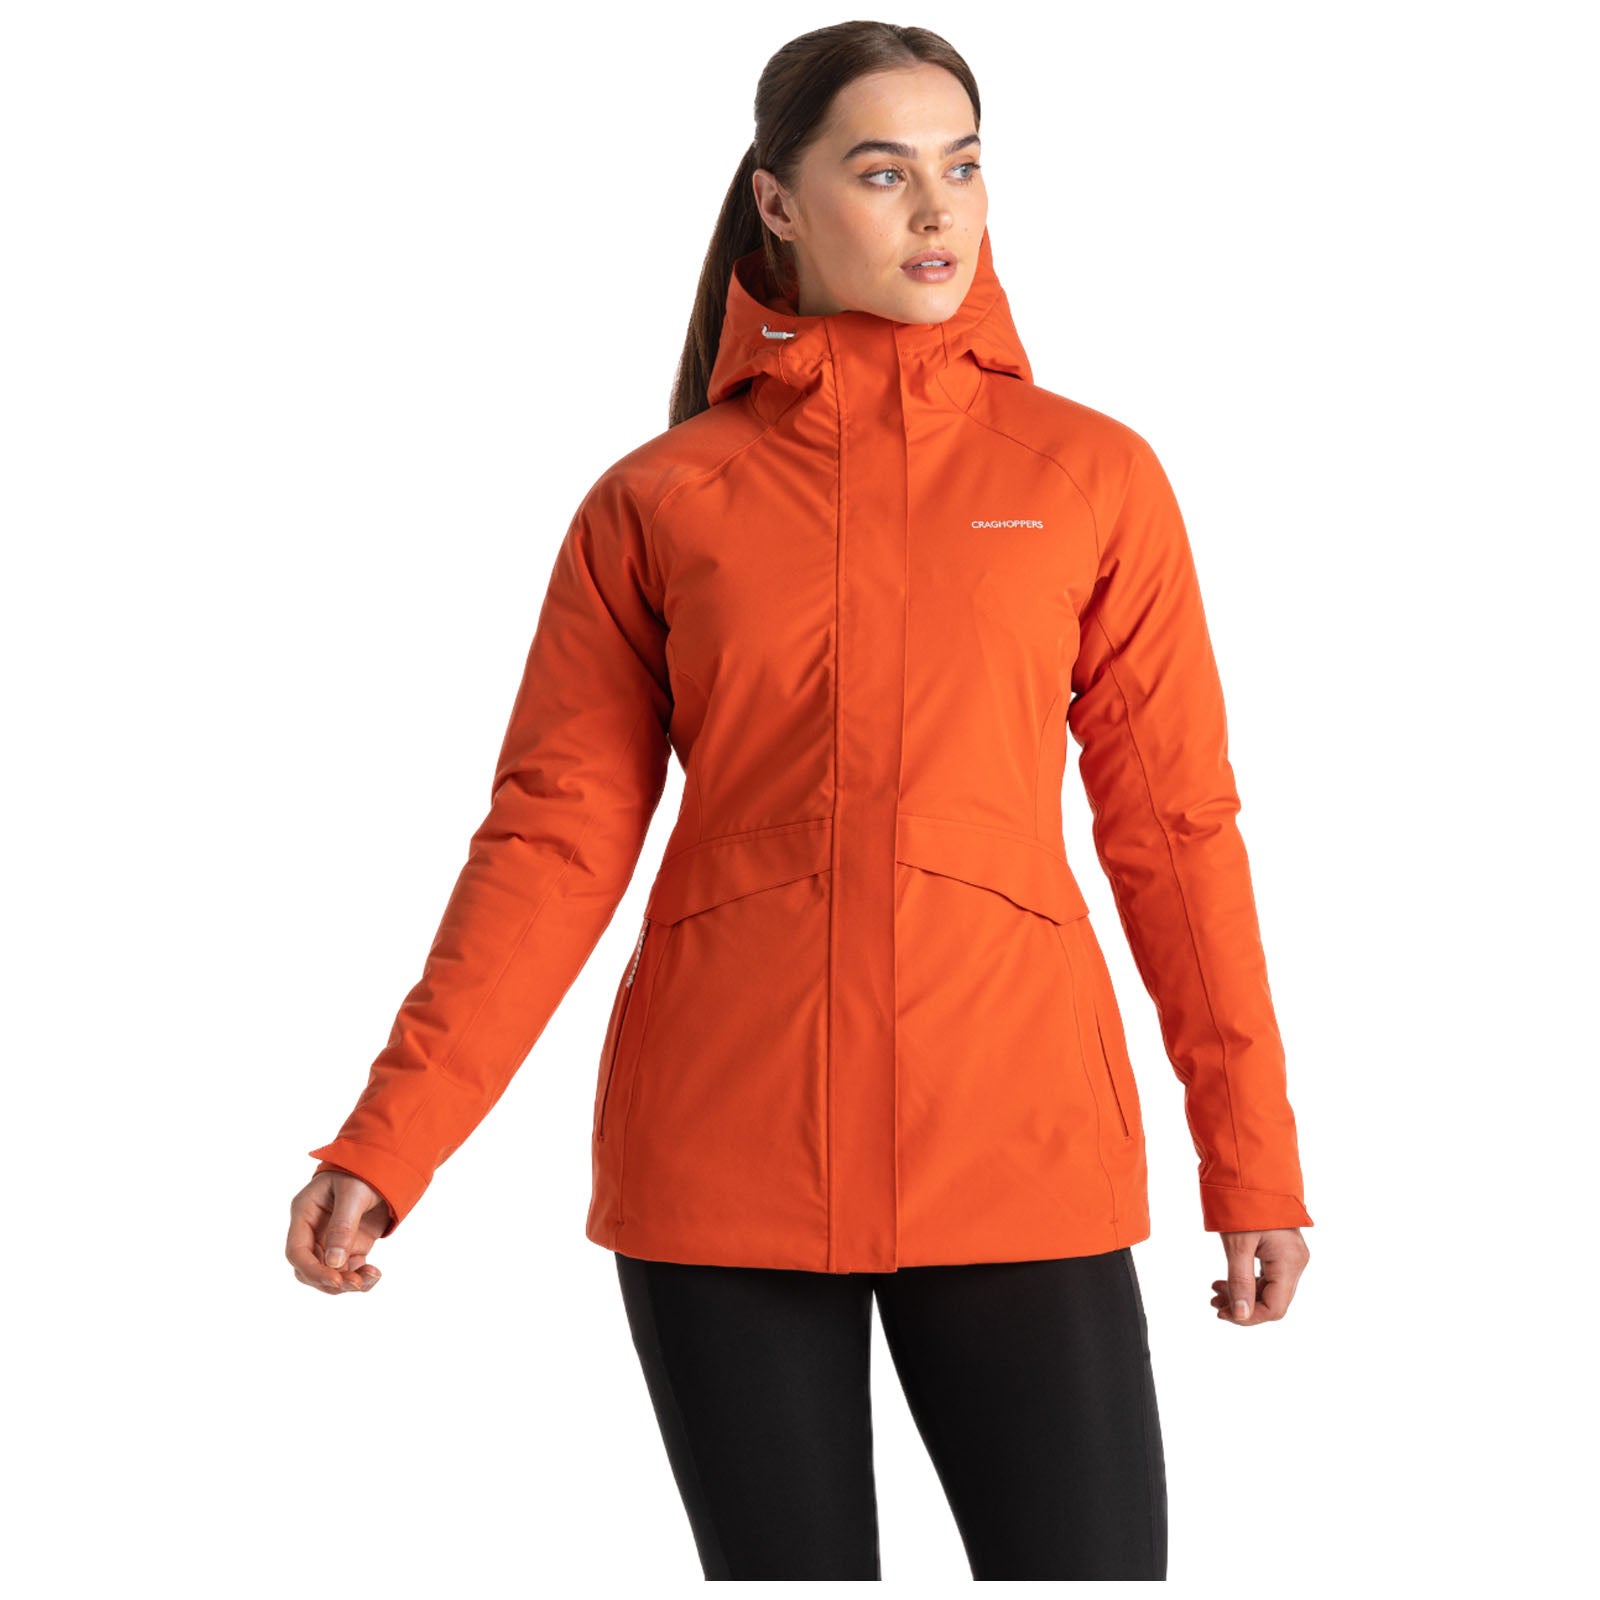 Craghoppers Ladies Caldbeck Thermic Waterproof Jacket